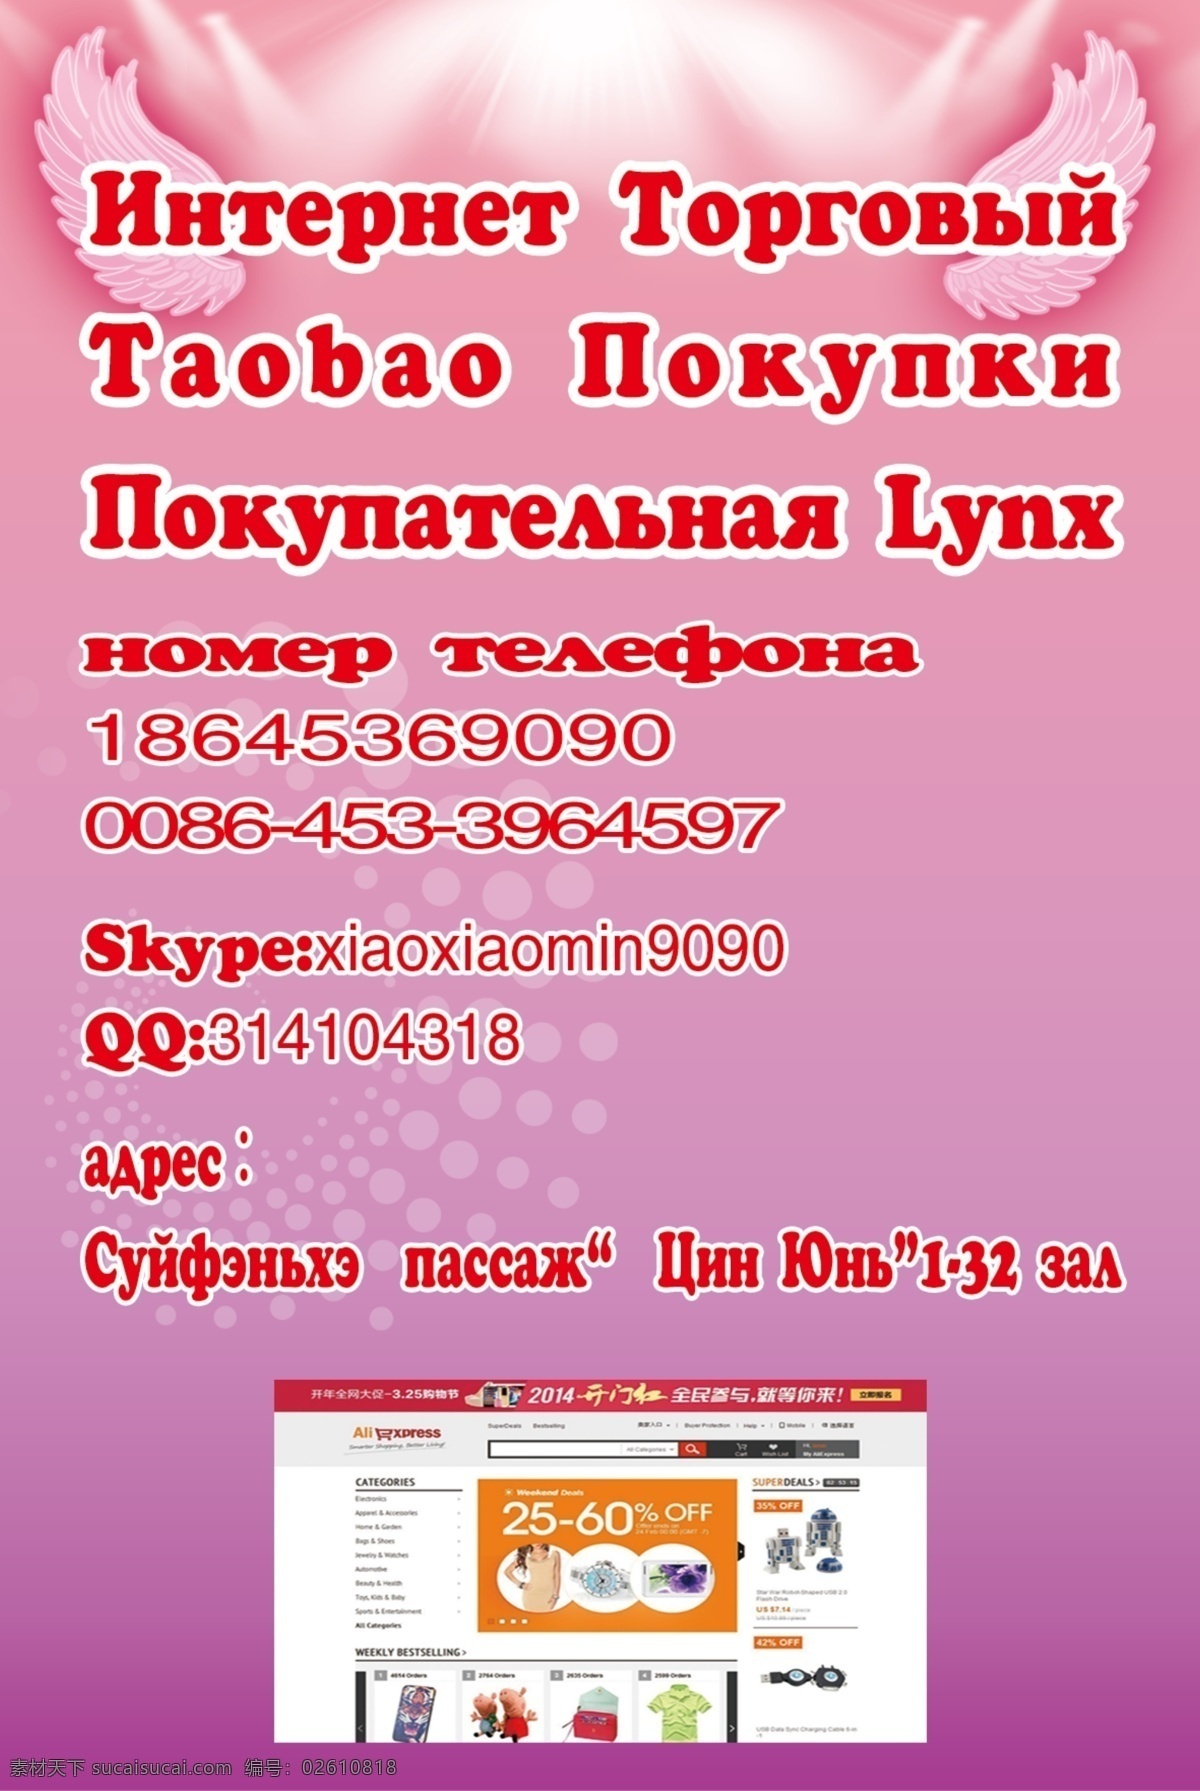 dm宣传单 传单 代购 广告设计模板 淘宝 天猫 源文件 俄文 模板下载 俄文传单